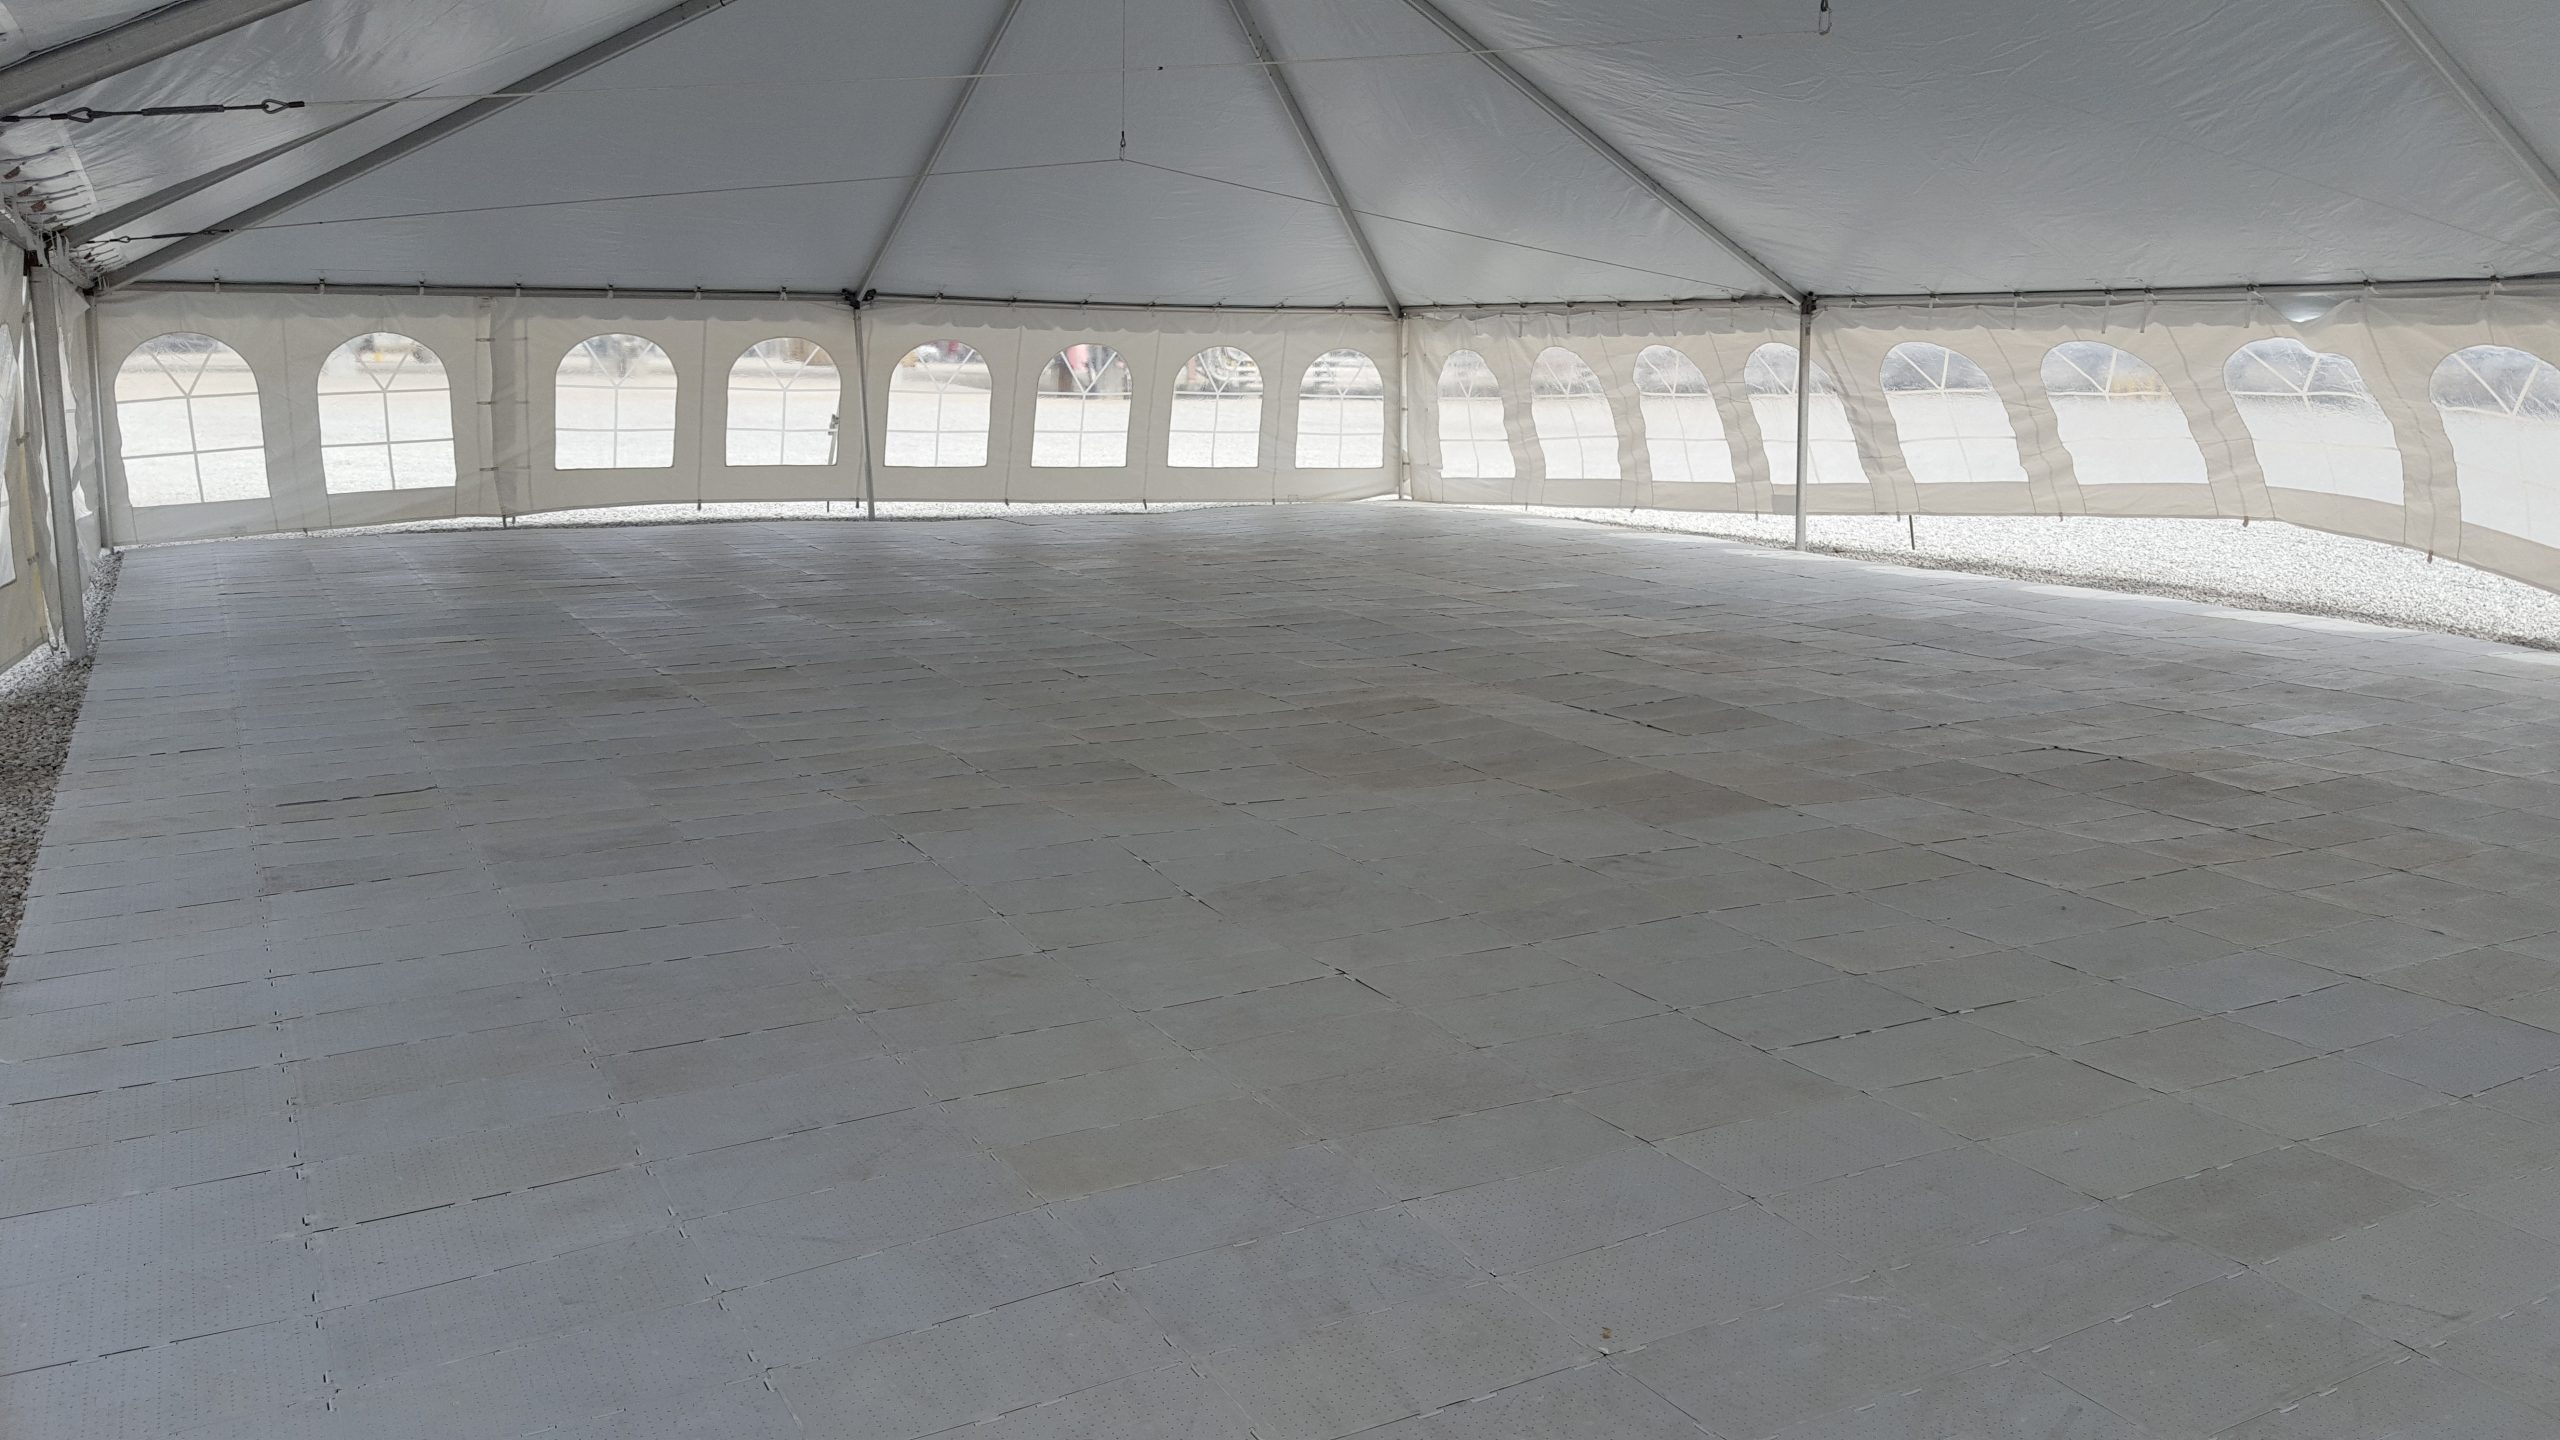 2,400 sq ft of sub floor under 40' x 60' tent